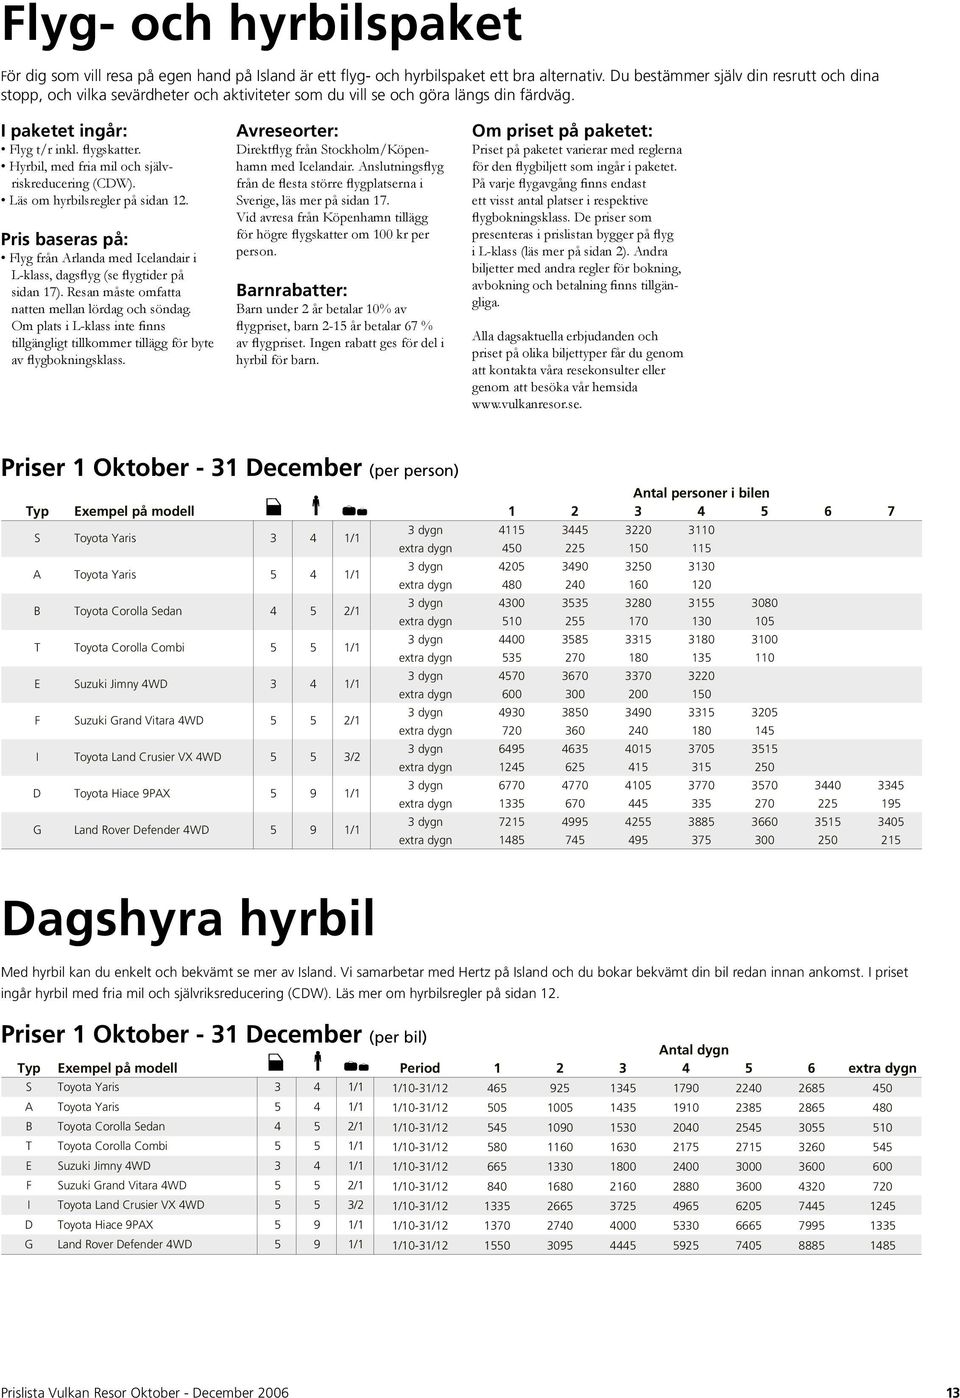 Hyrbil, med fria mil och självriskreducering (CDW). Läs om hyrbilsregler på sidan 12. Pris baseras på: Flyg från Arlanda med Icelandair i L-klass, dagsflyg (se flygtider på sidan 17).